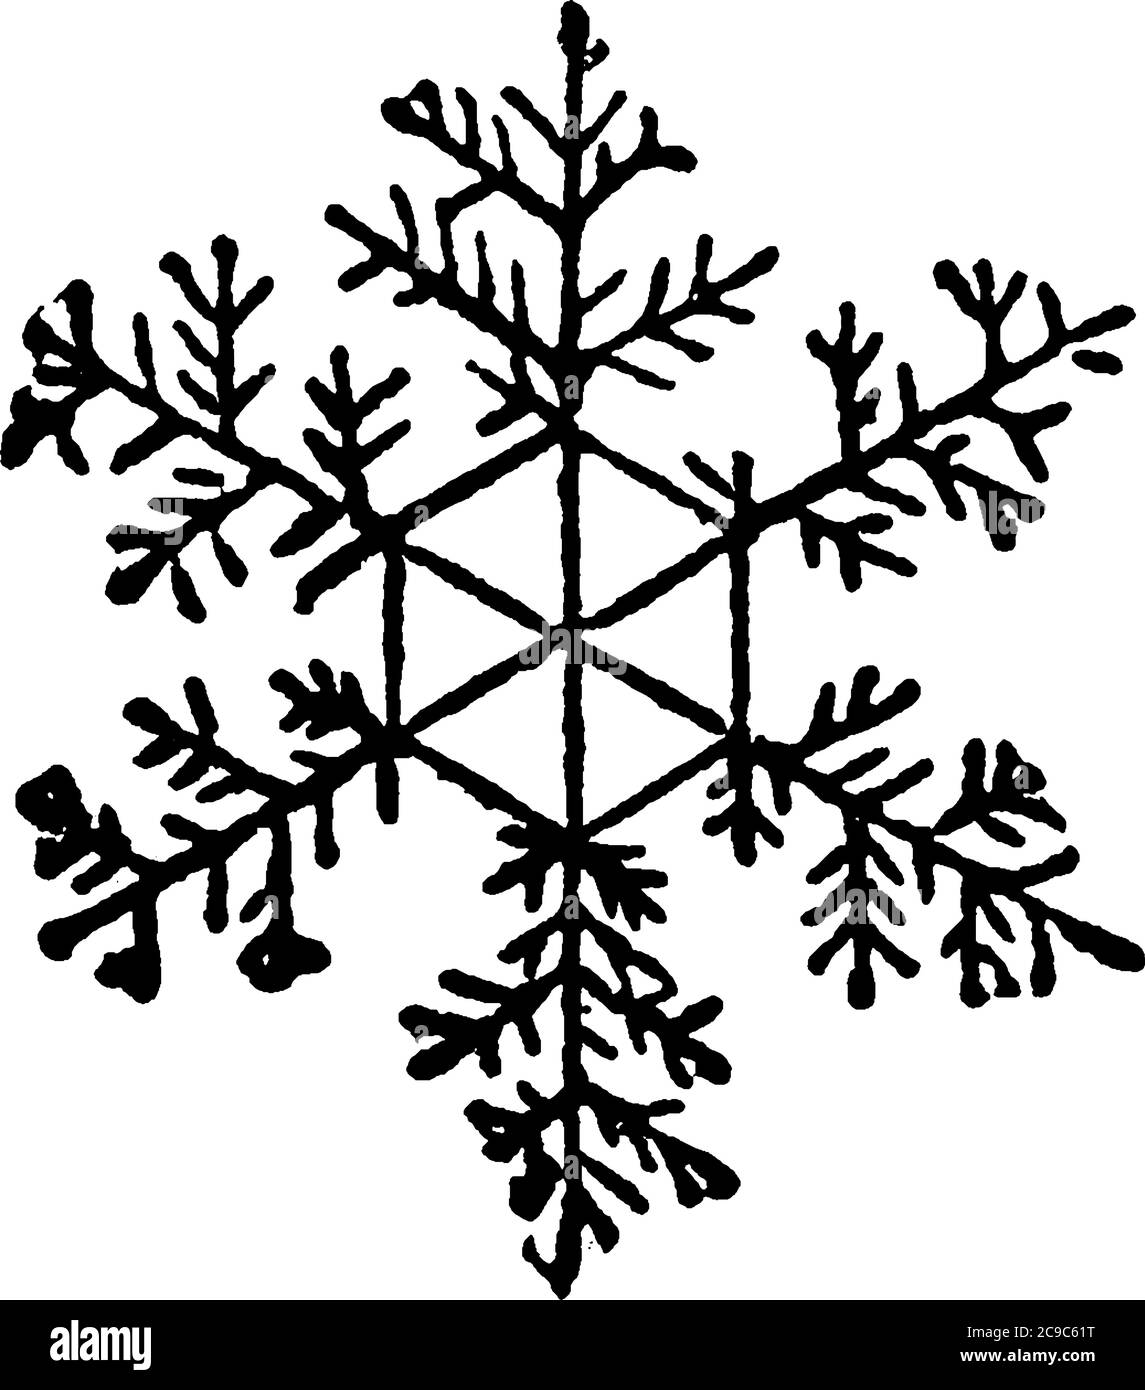 Schnee ist Wasser, das in Sternkristallen verfestigt, modifiziert und in der Atmosphäre schwimmt. Diese Kristalle entstehen aus der Stauung der Vesikel whi Stock Vektor